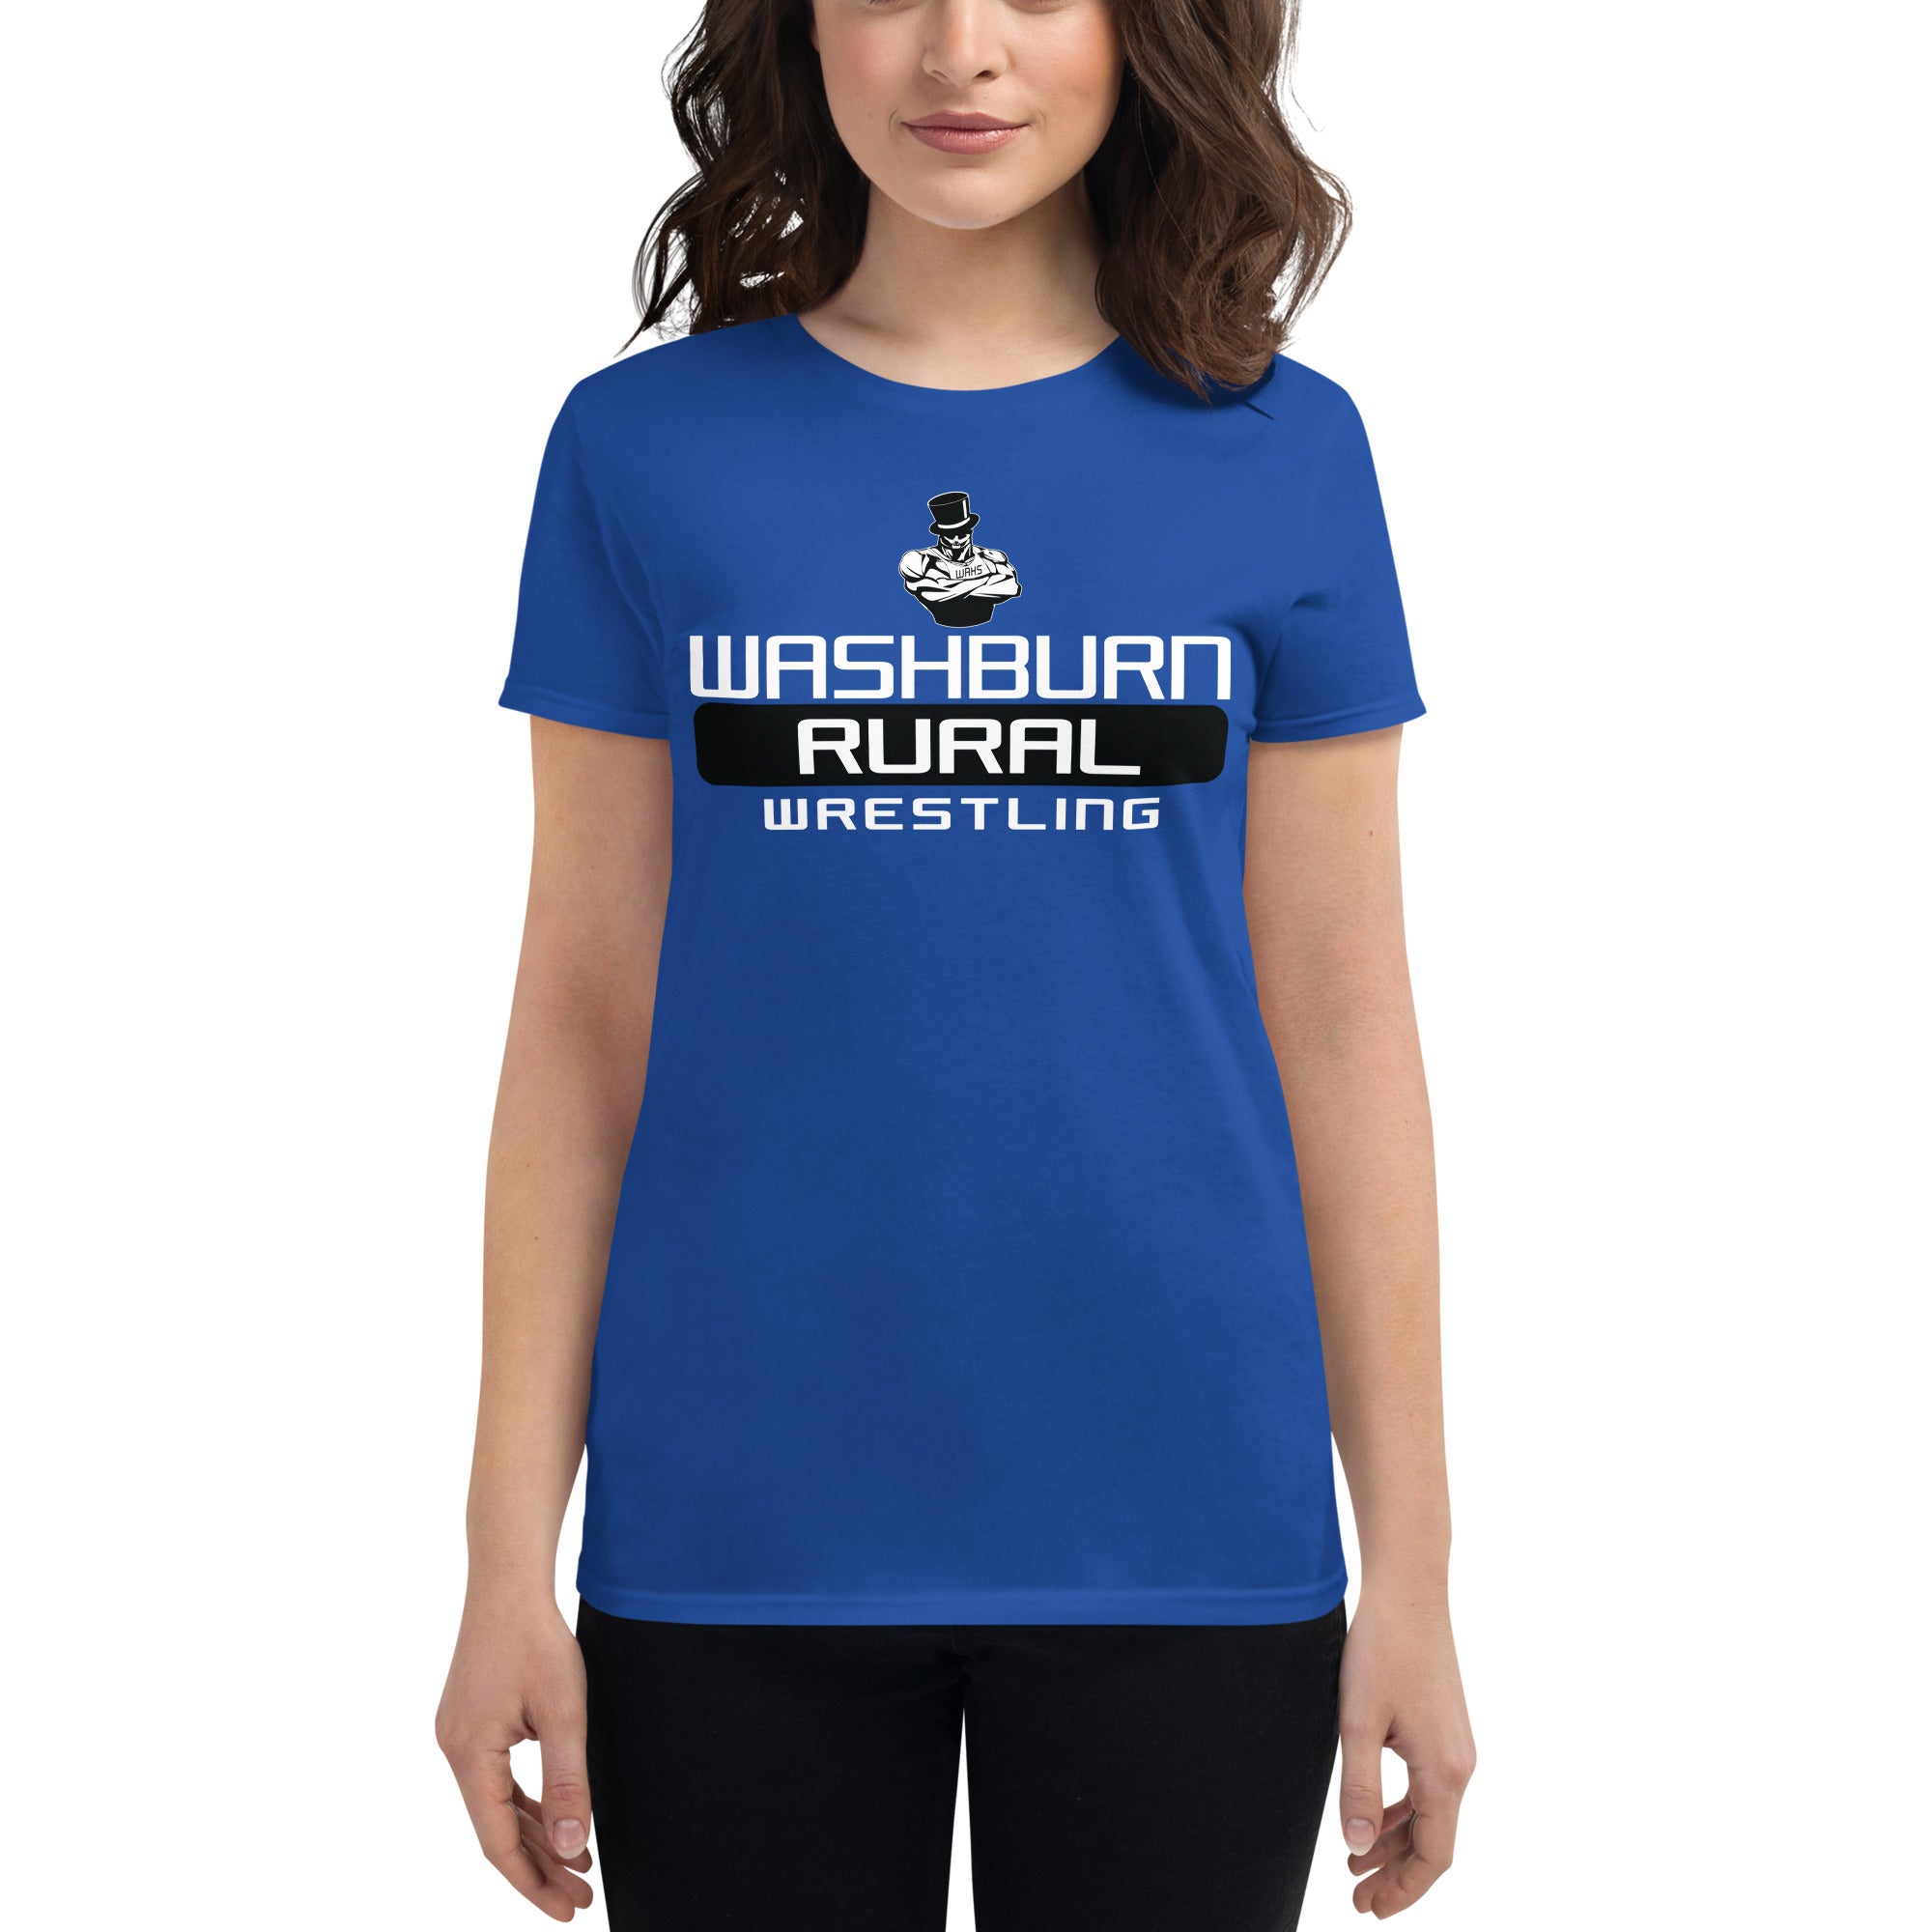 Washburn Rural Wrestling Women's short sleeve t-shirt